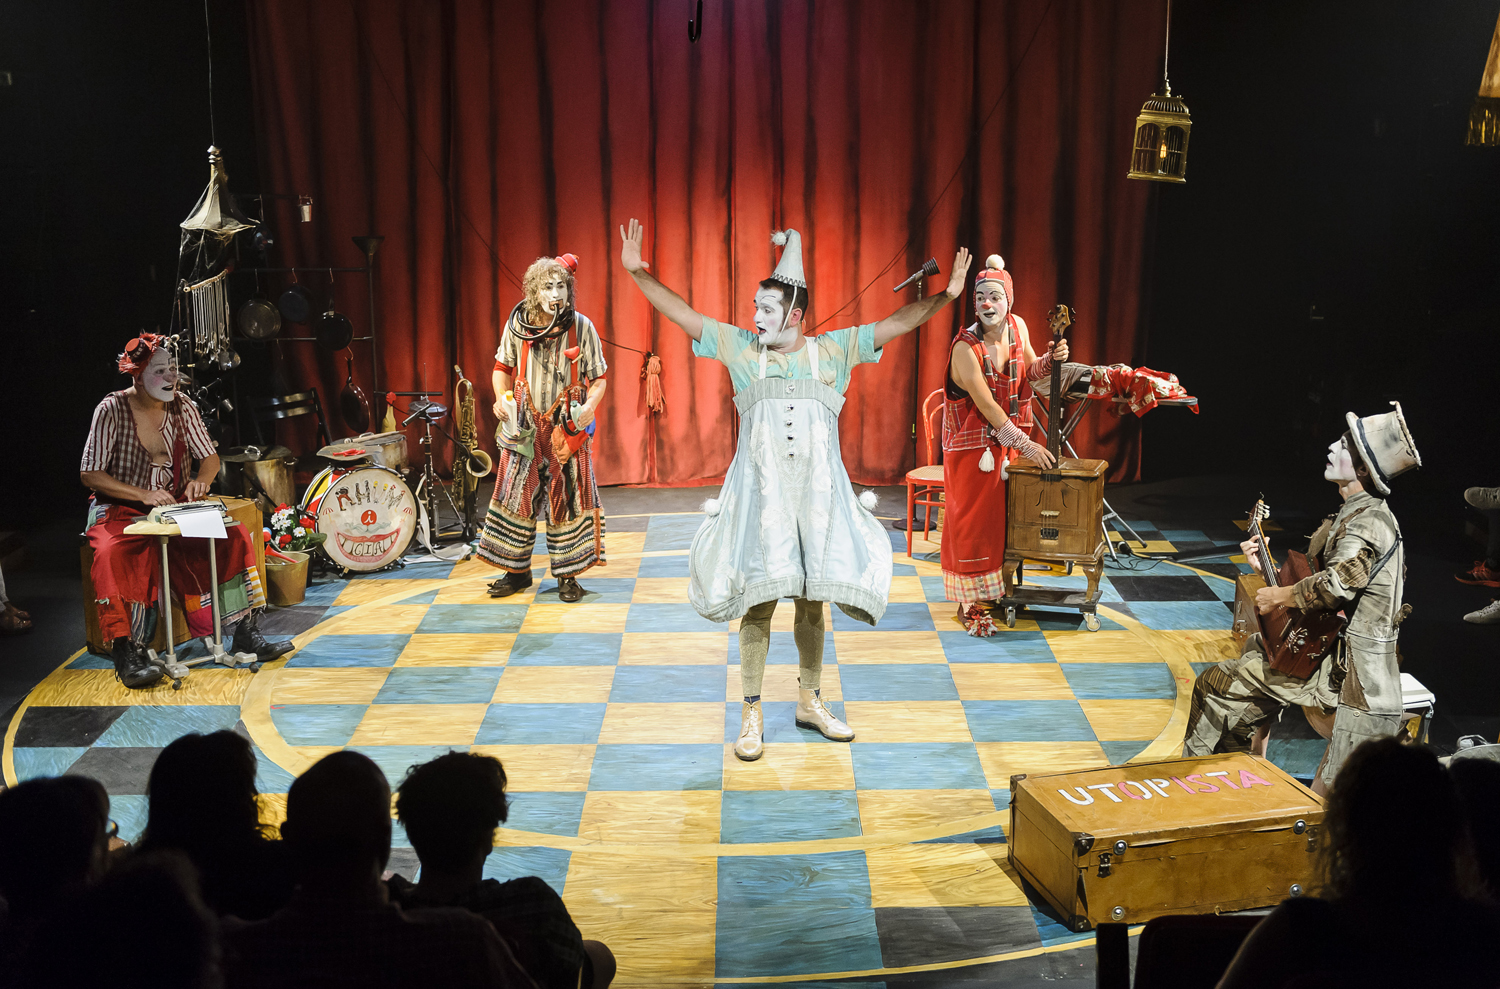 El cicle teatral de Tàrrega ofereix dissabte “Rhümia”, guardonat amb el Premi Zirkòlica 2016 com a millor espectacle de circ